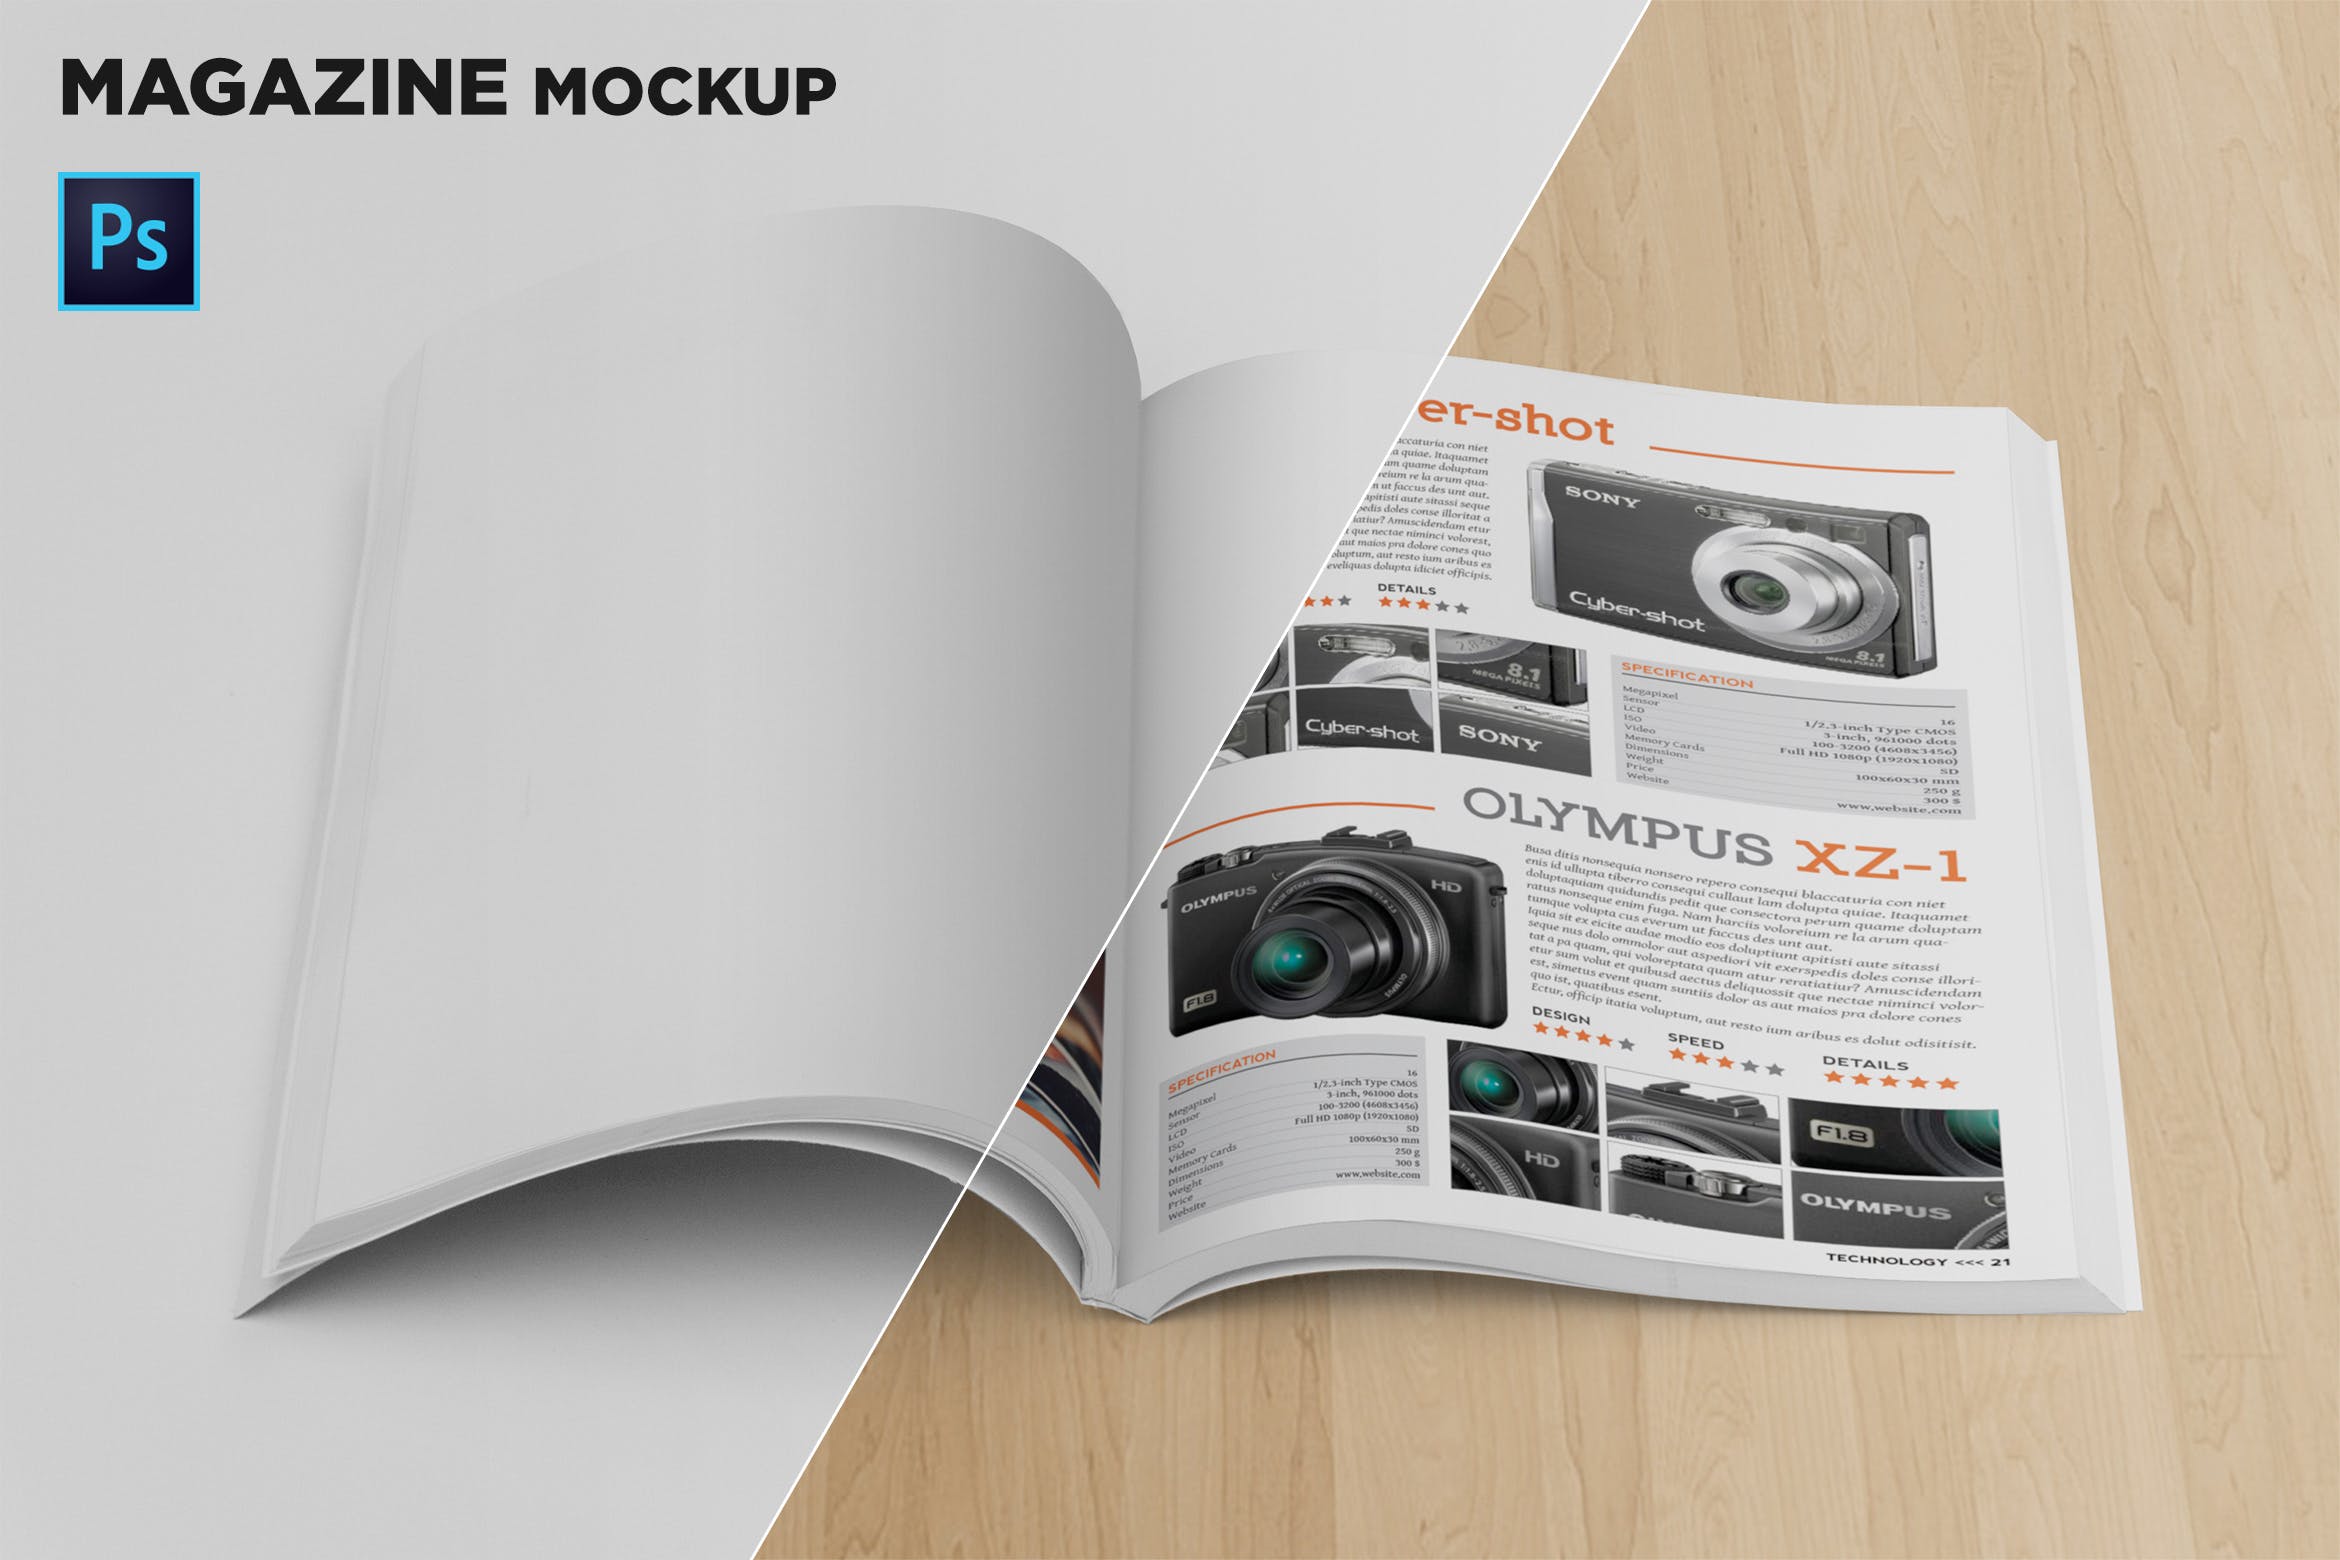 杂志内页排版设计前视图样机16图库精选 Magazine Mockup Front View插图